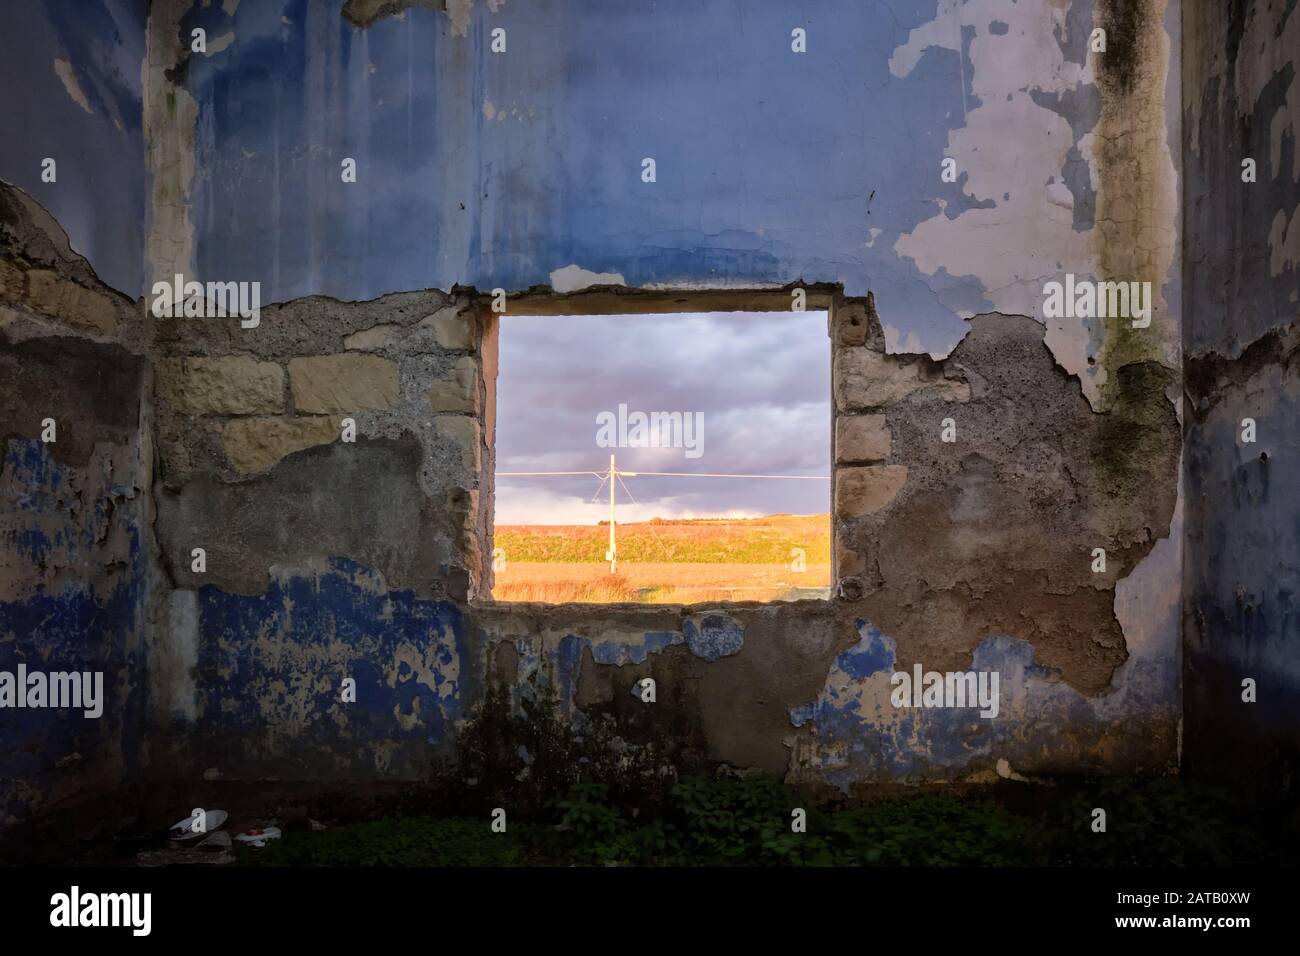 Arrêtez de regarder les murs, regardez la fenêtre. La campagne sicilienne vue depuis une fenêtre entre les murs ruinés Banque D'Images